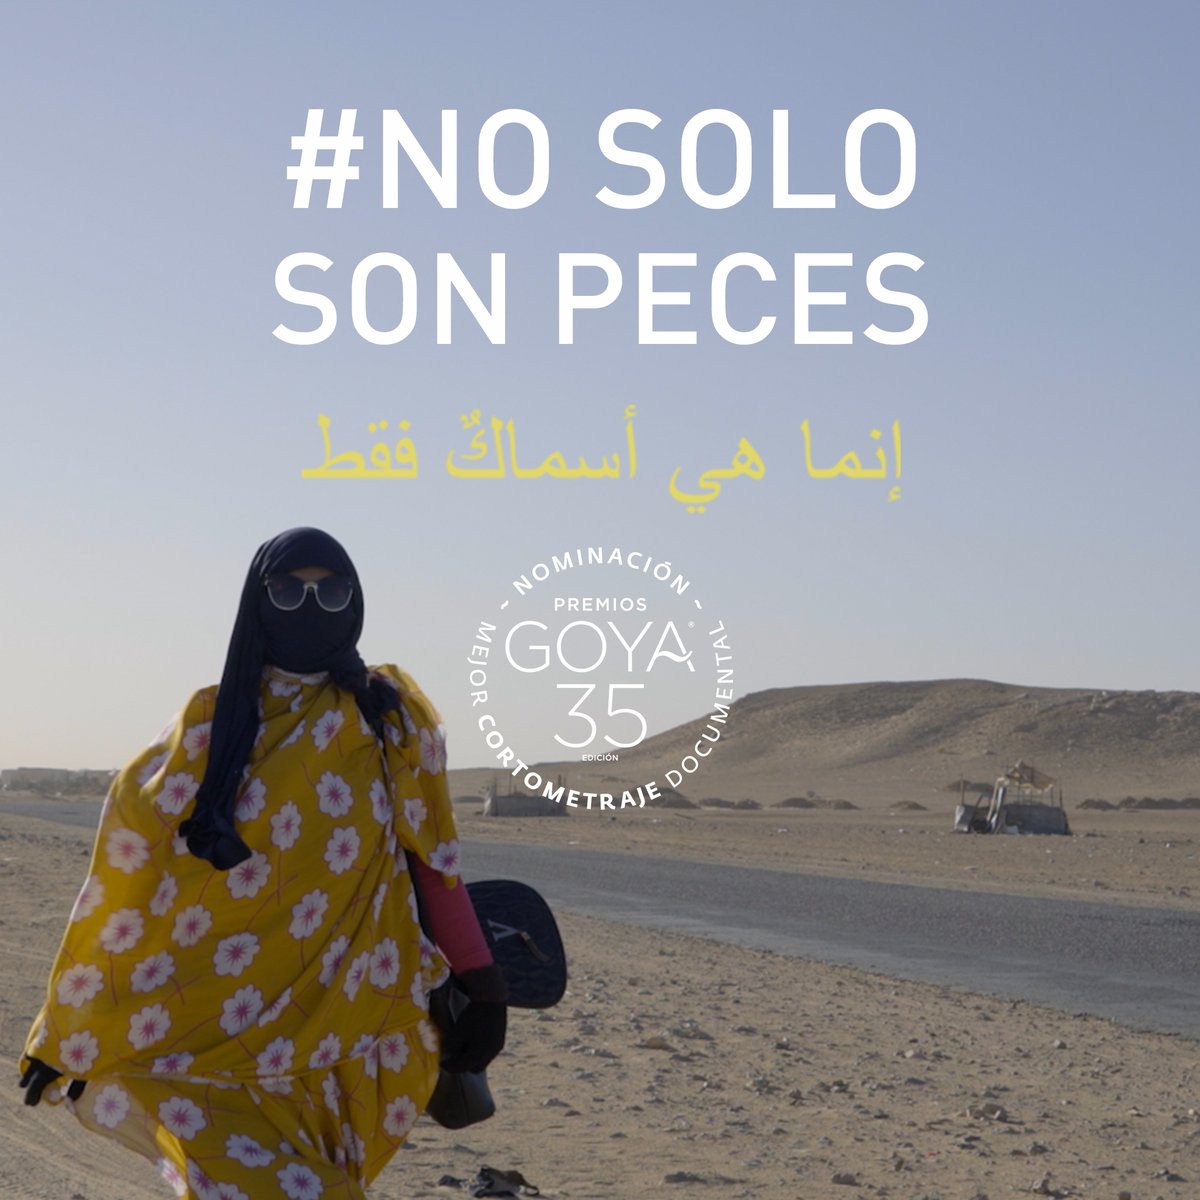 Esta noche está nominada #SoloSonPeces en los #Goya2021
al mejor corto documental. Hagamos que la lucha del pueblo saharaui sea visible #SaharaLibre